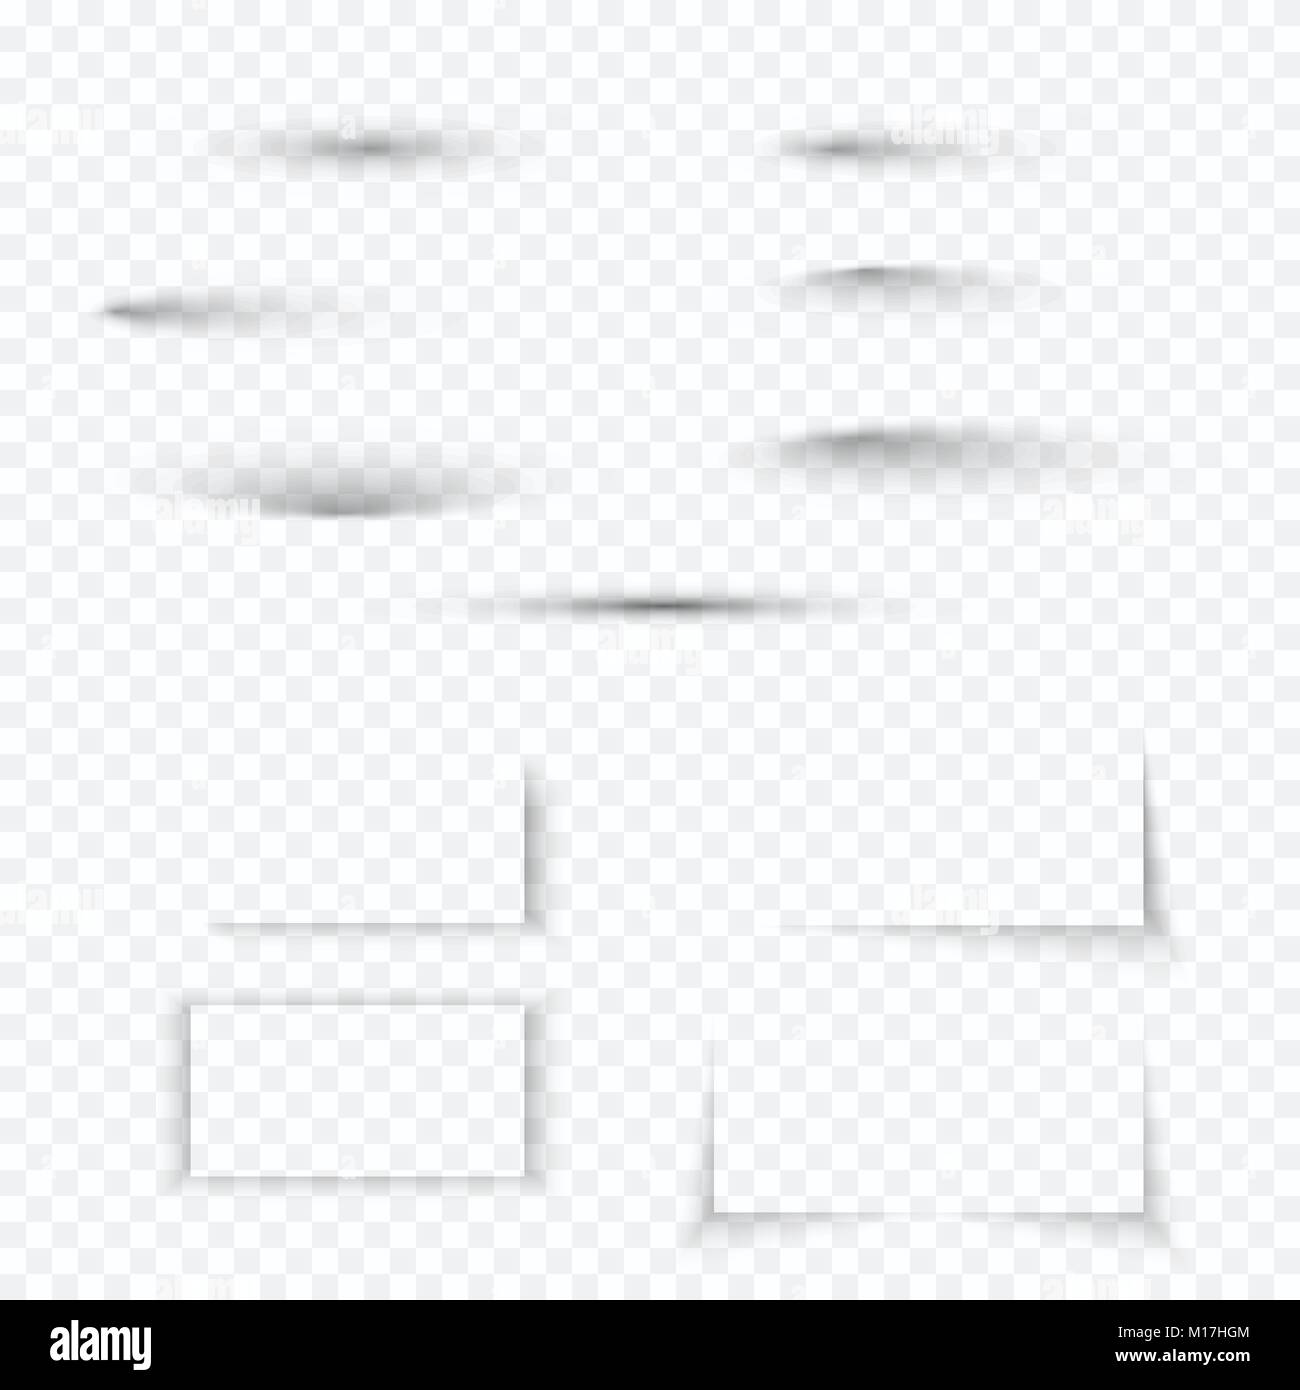 Trasparente morbido ombra set. Abstract realistico effetto ombra raccolta con bordo morbido. Illustrazione di vettore isolato su sfondo trasparente Illustrazione Vettoriale